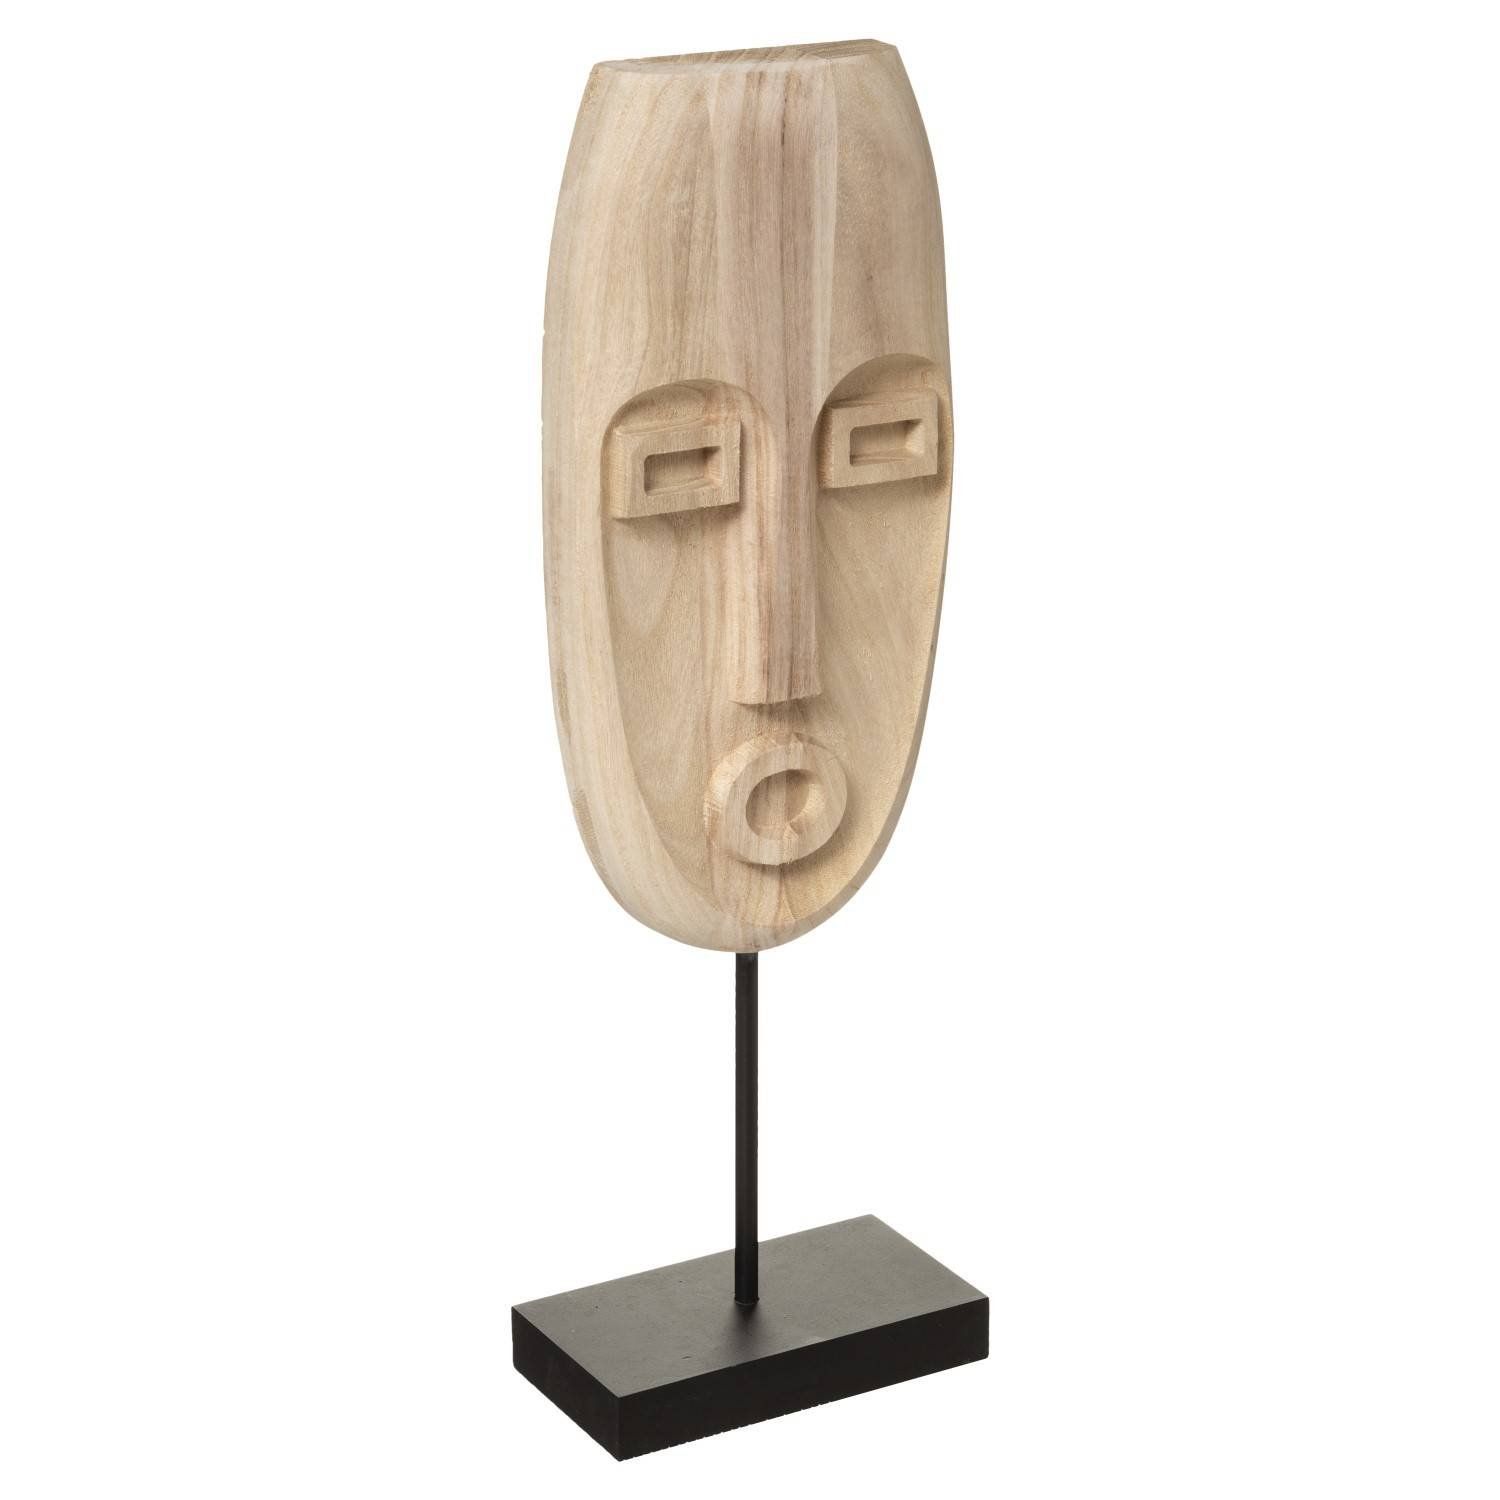 Atmosphera Dřevěná maska SAFARI, etnický motiv, přírodní hnědá, výška 46,5 cm - EDAXO.CZ s.r.o.